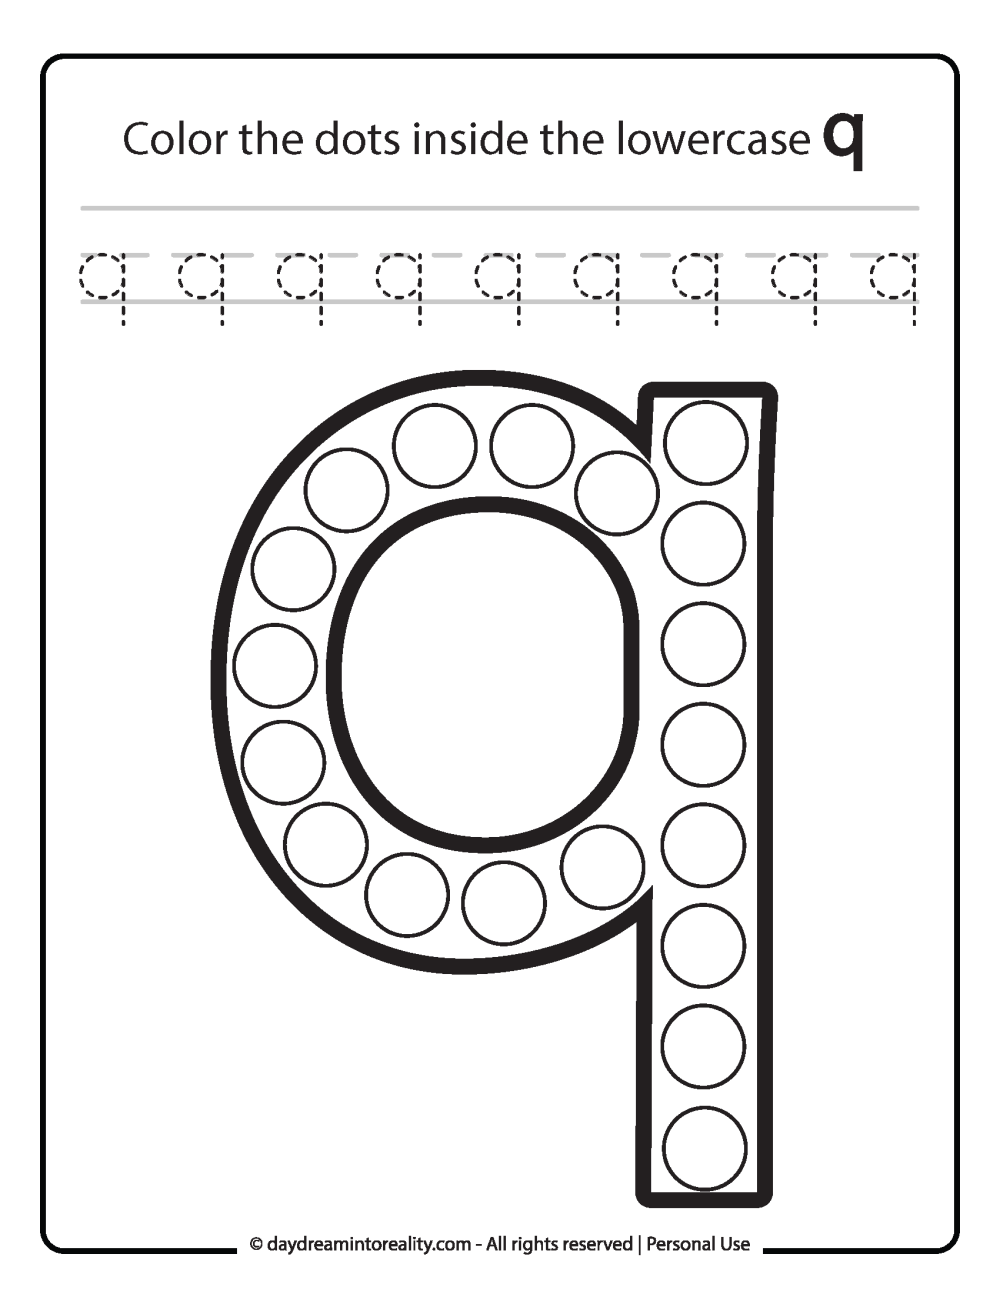 Lowercase "q" Dot Marker Worksheet Free Printable activity for kids (preschool, kindergarten)